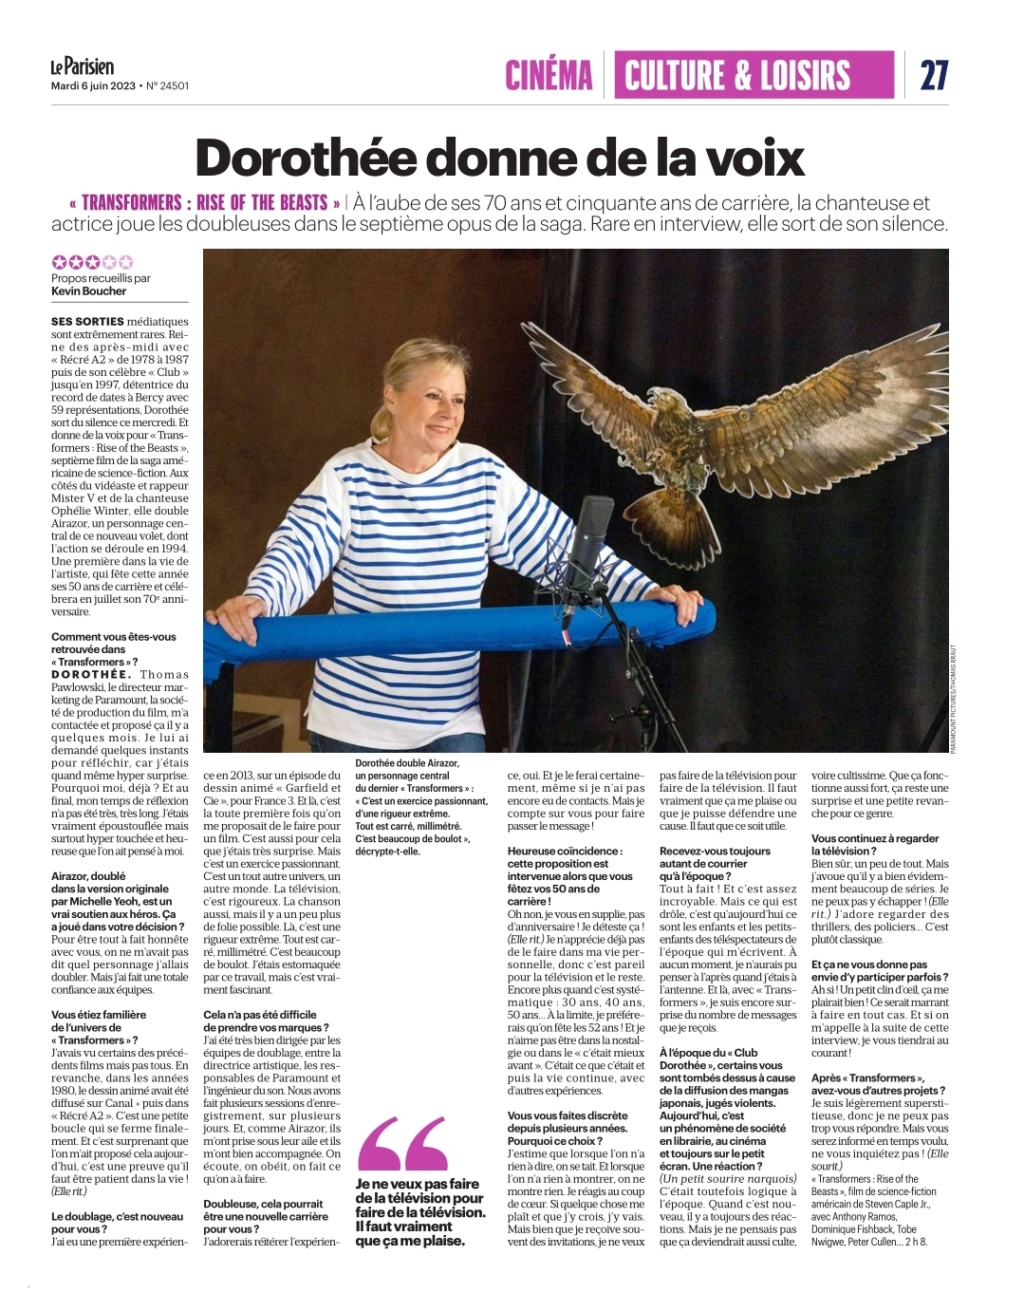 L'actualité de Dorothée - Page 8 Smarts10